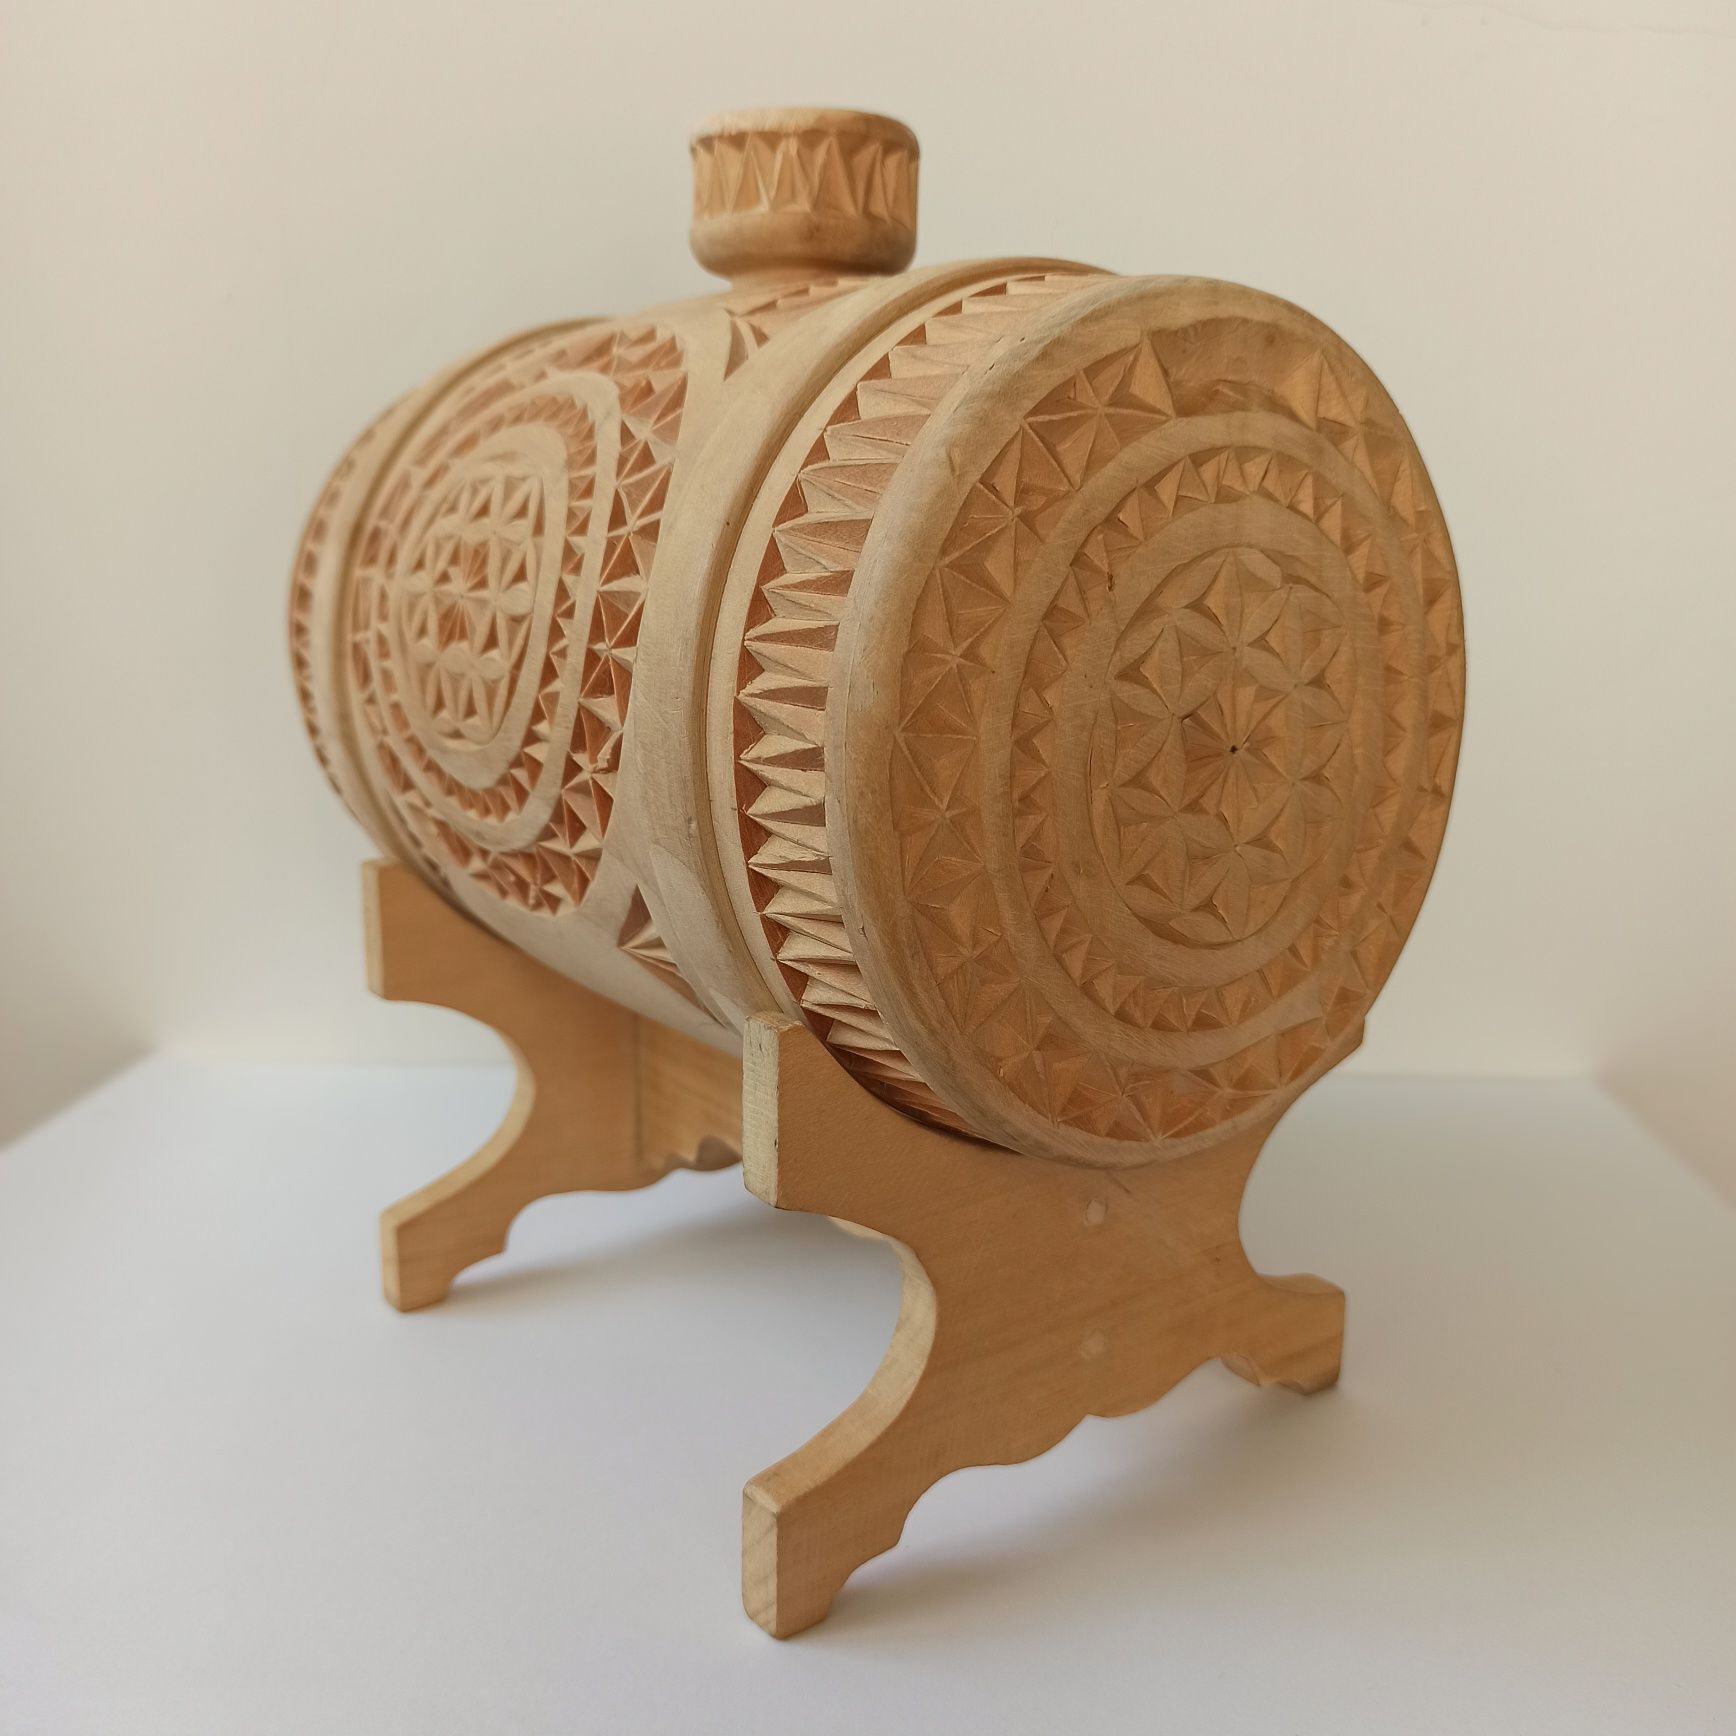 Декоративный деревянный бочонок ручной работы